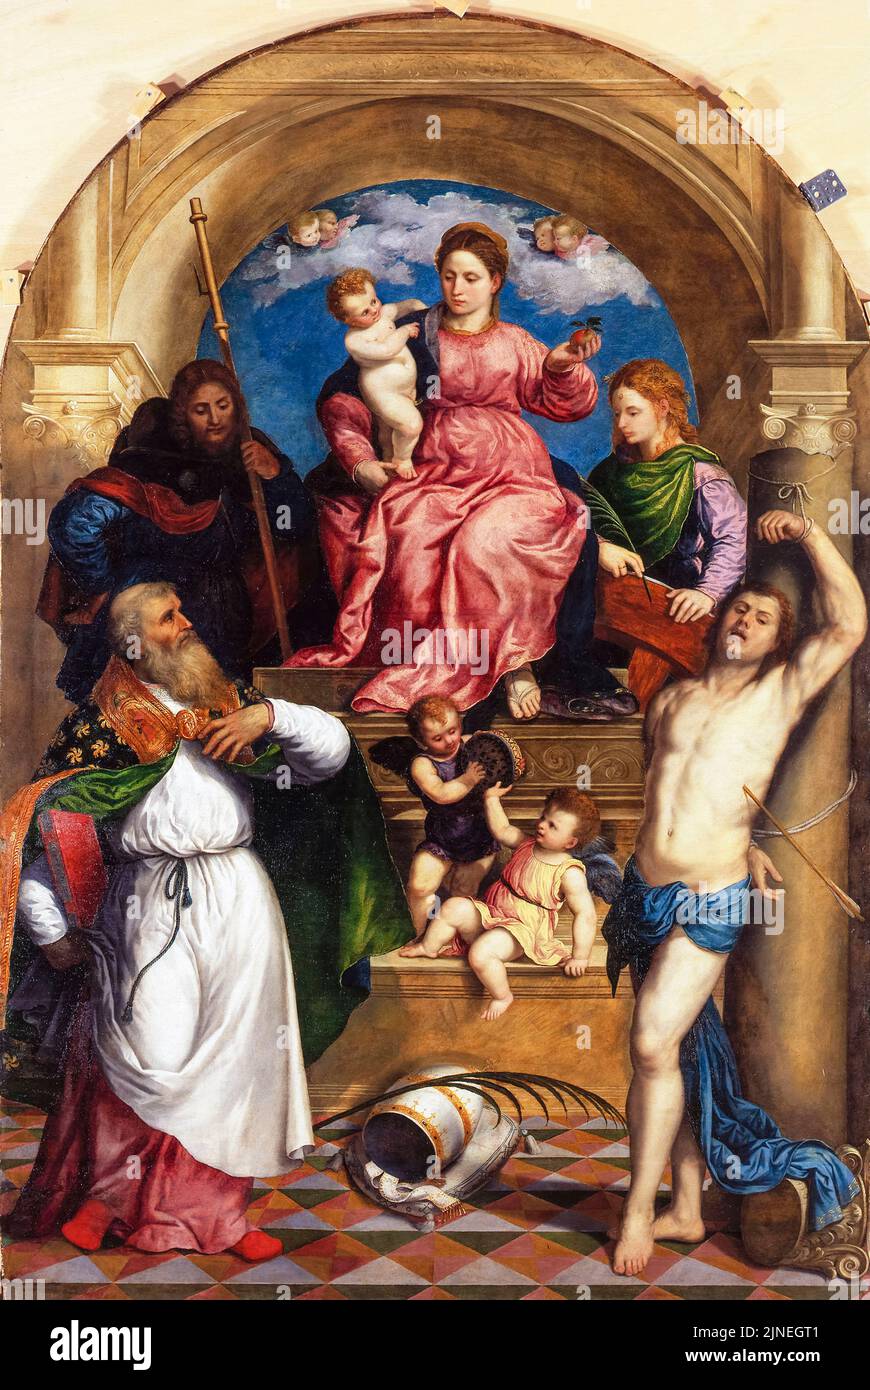 Paris Bordone, Madonna avec Child Enthroned et Saints, peinture à l'huile sur bois de peuplier, vers 1530 Banque D'Images